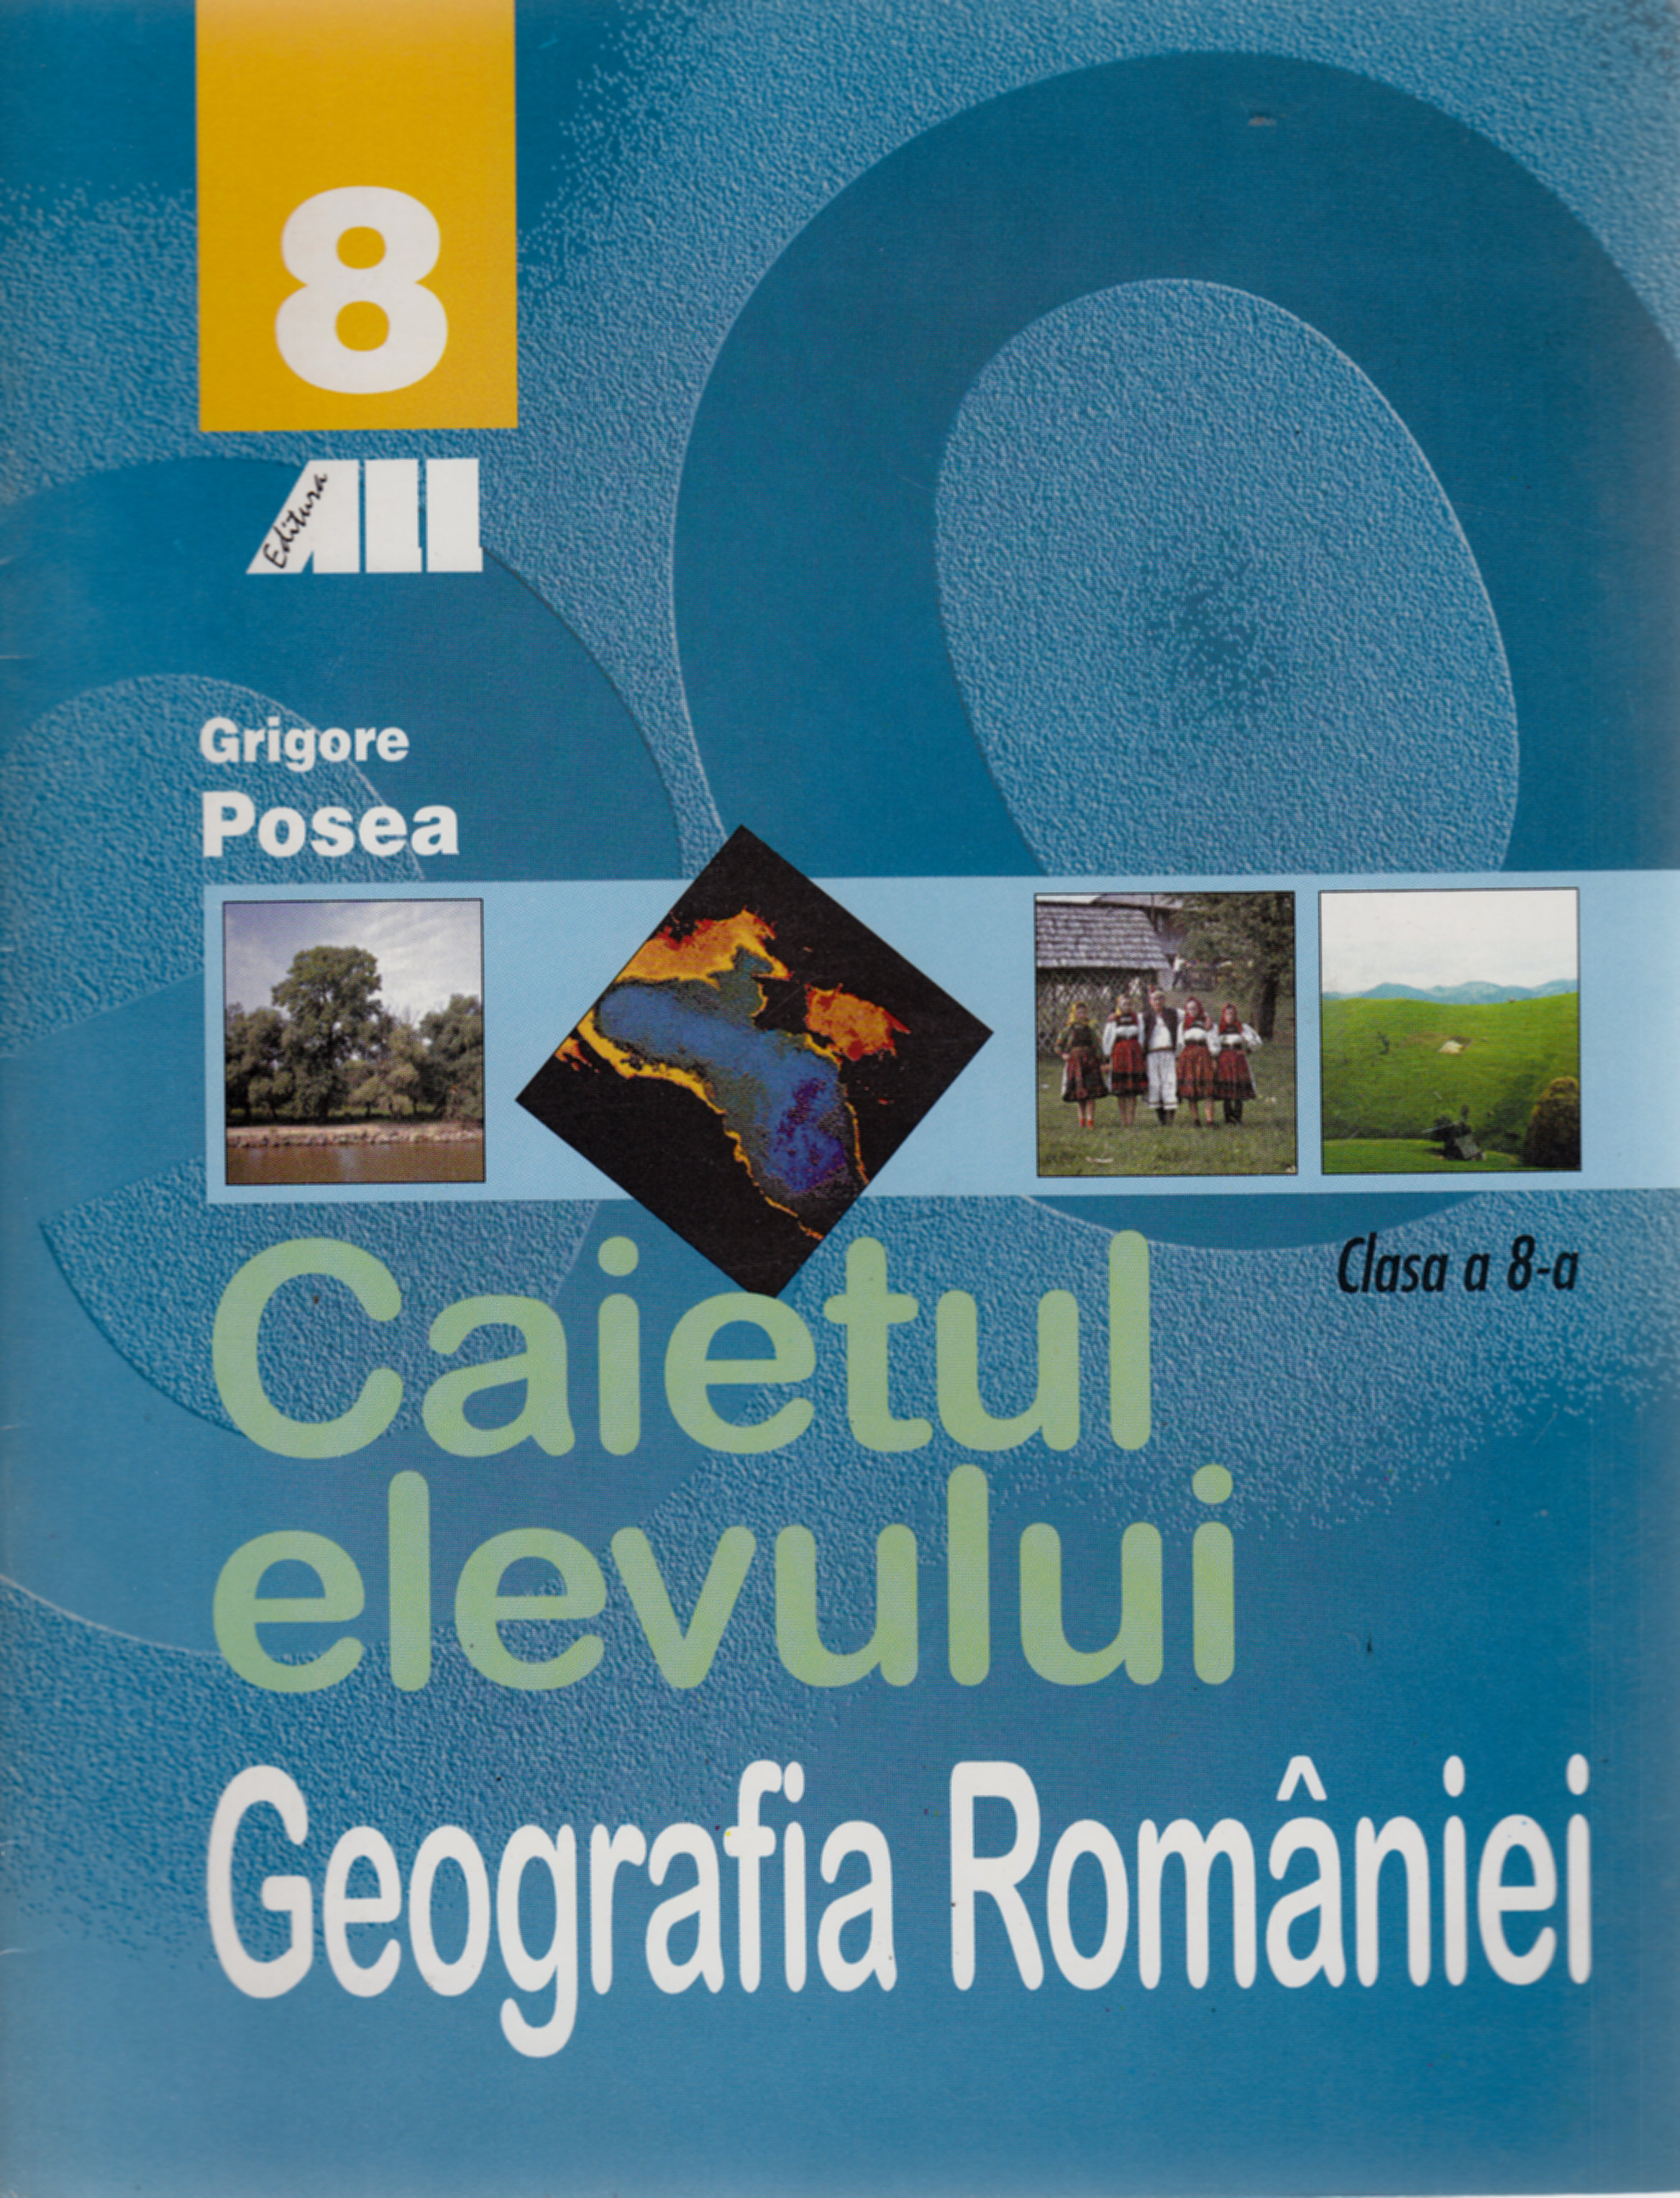 Geografie clasa 8 - Caietul Elevului - Grigore Posea